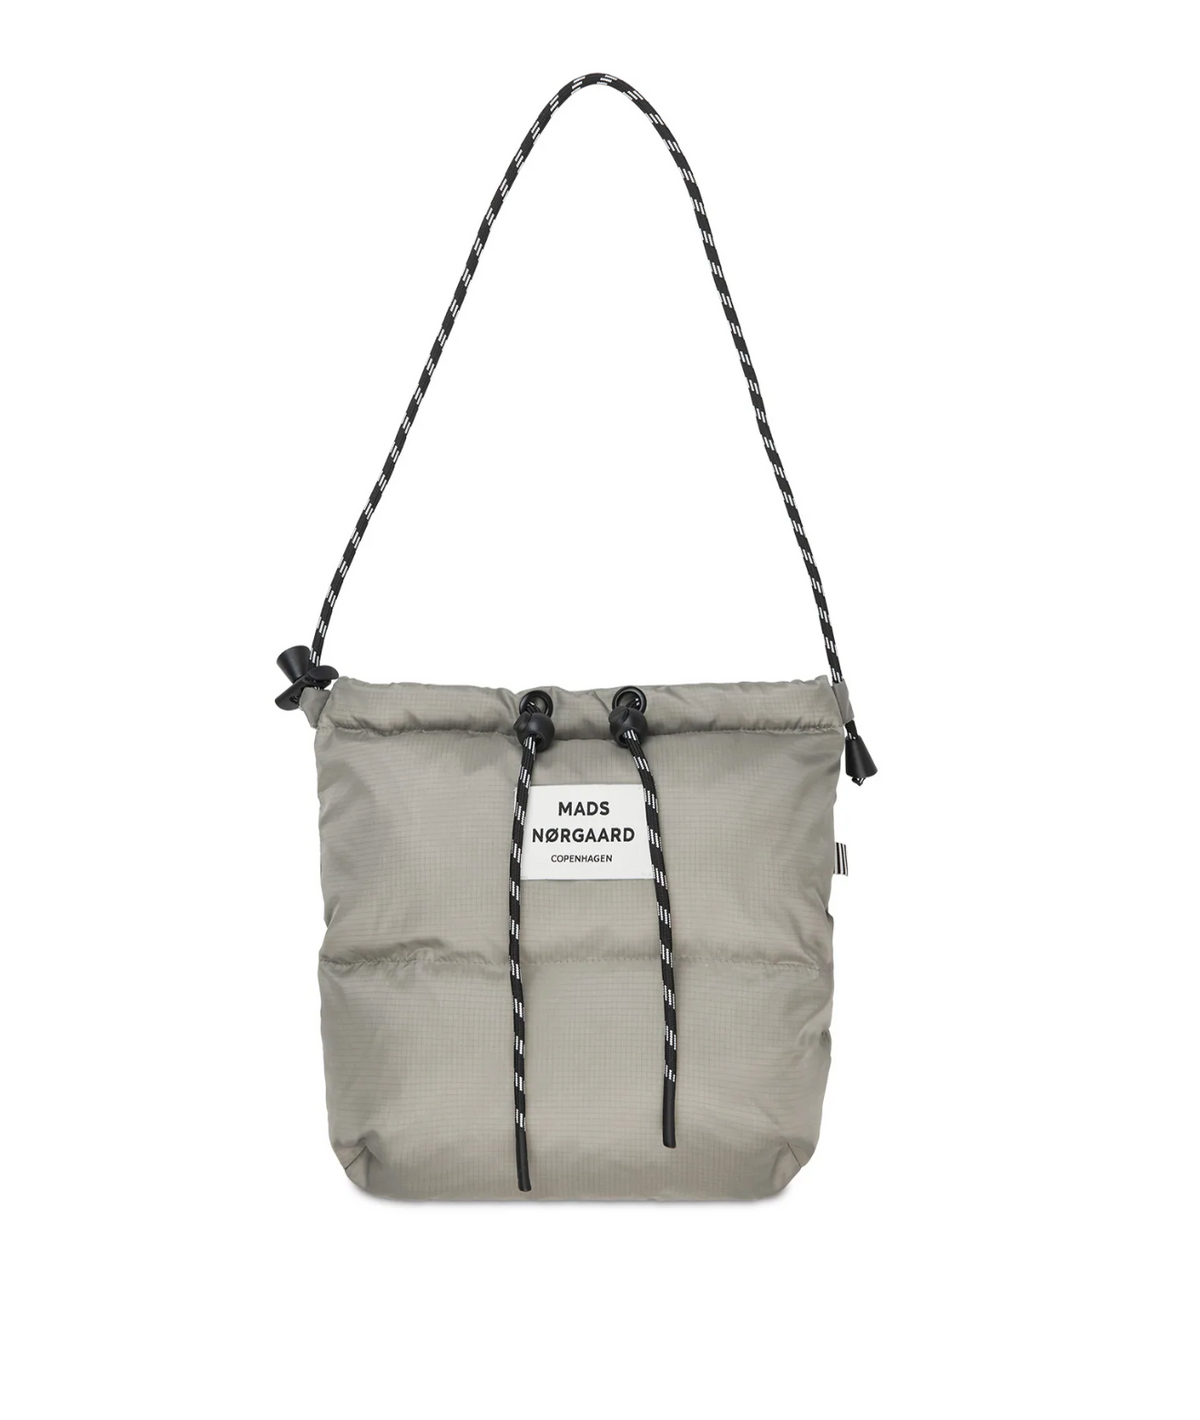 Baggu standard bag, Baby Baggu, Cloud Bag, Laptop sleeve, nachhaltig ...